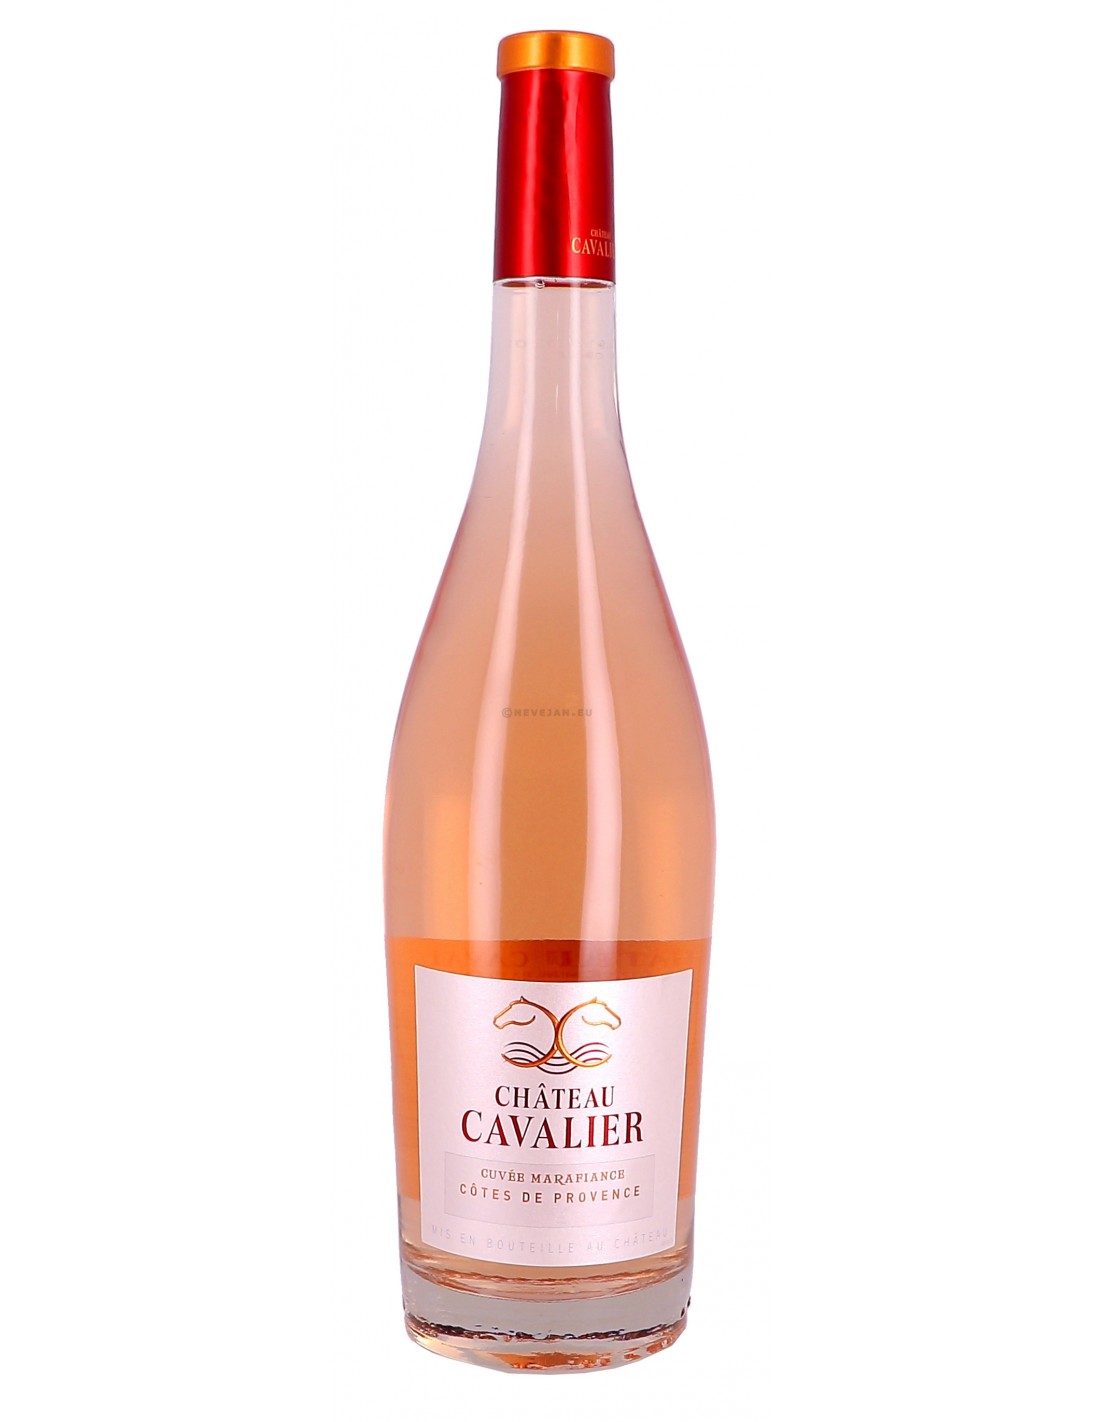 Vin roze sec, Chateau Cavalier Cuvée Marafiance, Côtes de Provence, 12.5% alc., 3L, Franta alcooldiscount.ro